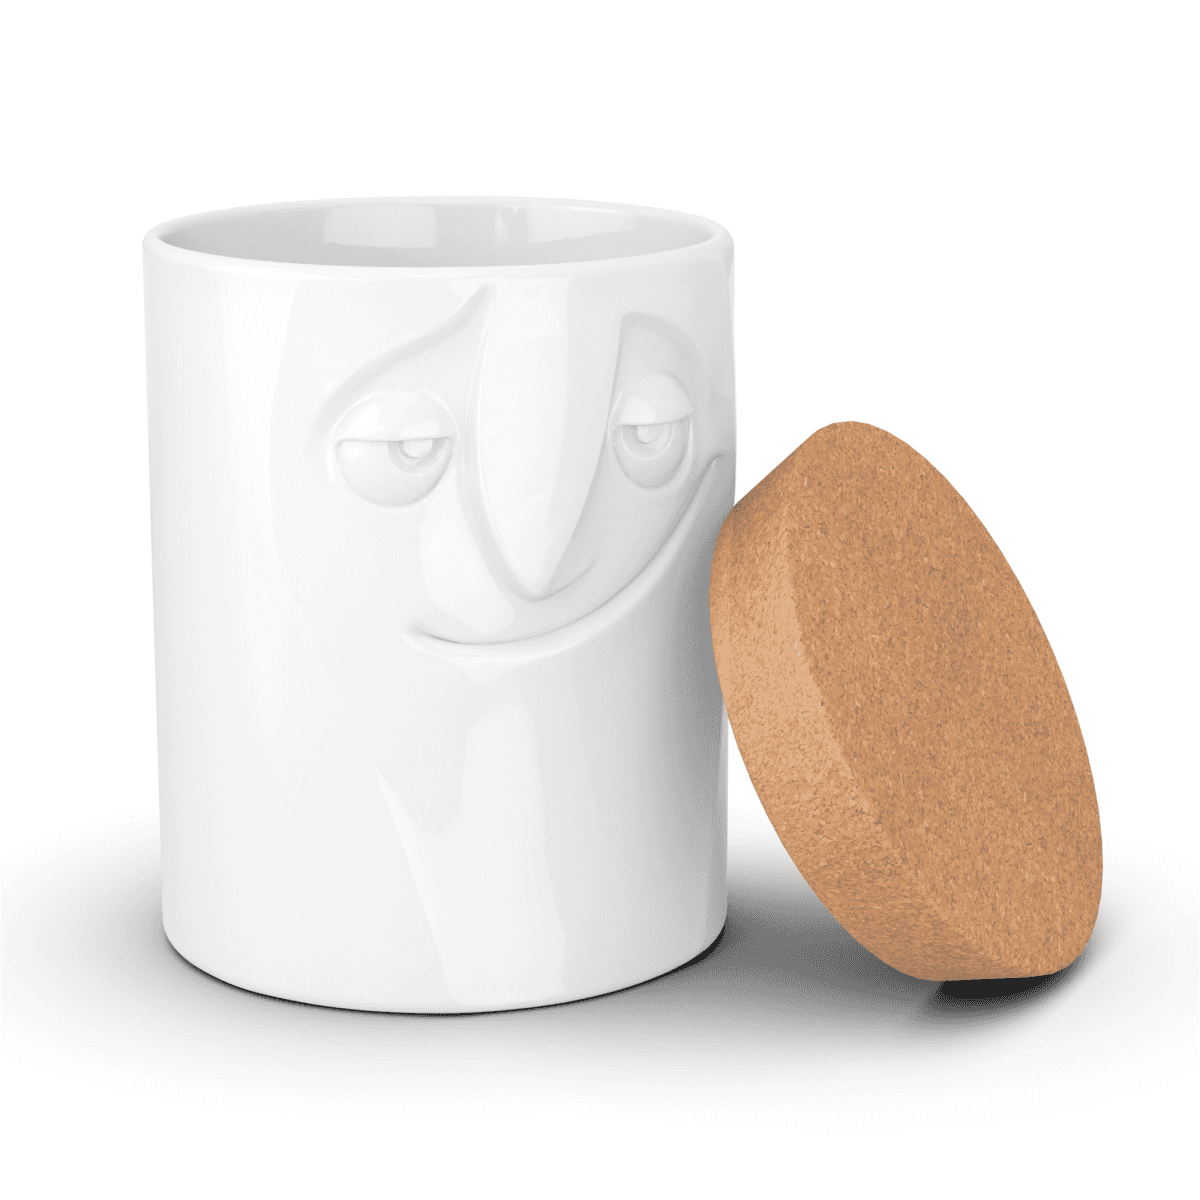 Immagine del prodotto Barattolo in Ceramica Grande Affascinante 3D con Tappo in Sughero | TASSEN By Fiftyeight Products